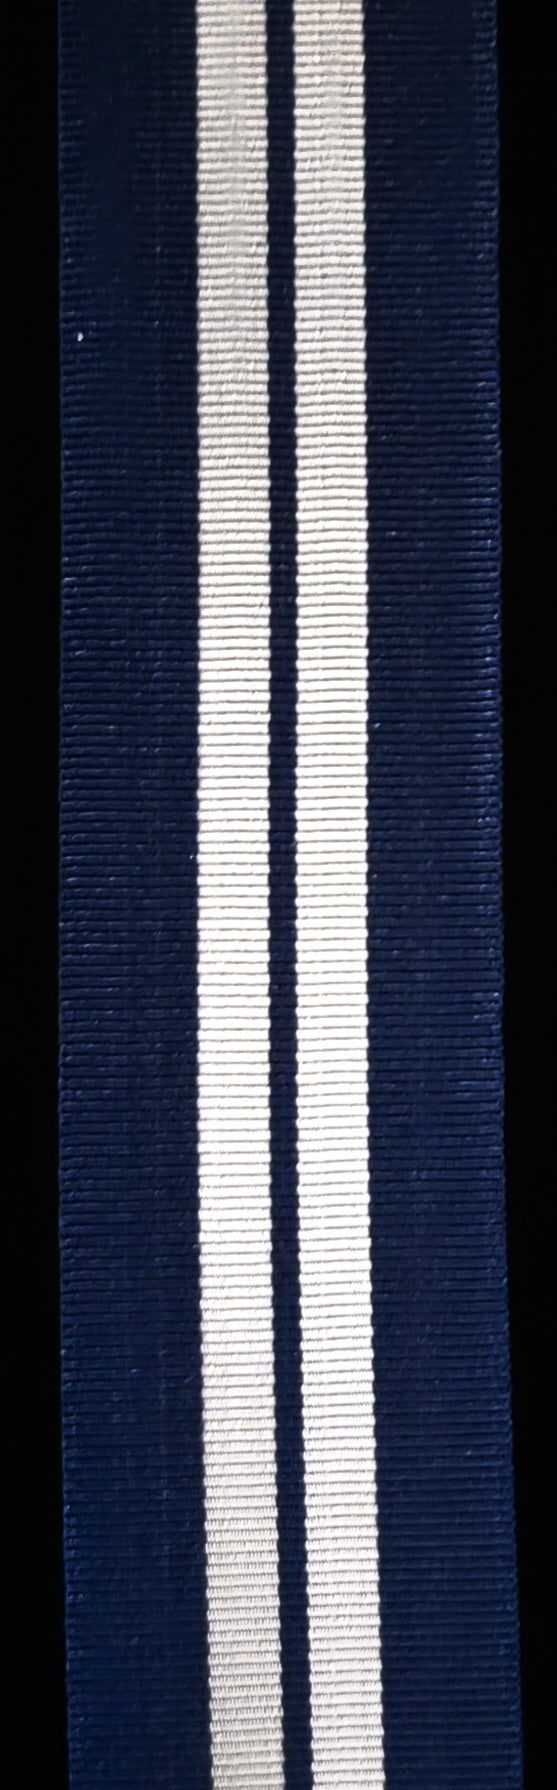 Ribbon, Distinguished Service Medal